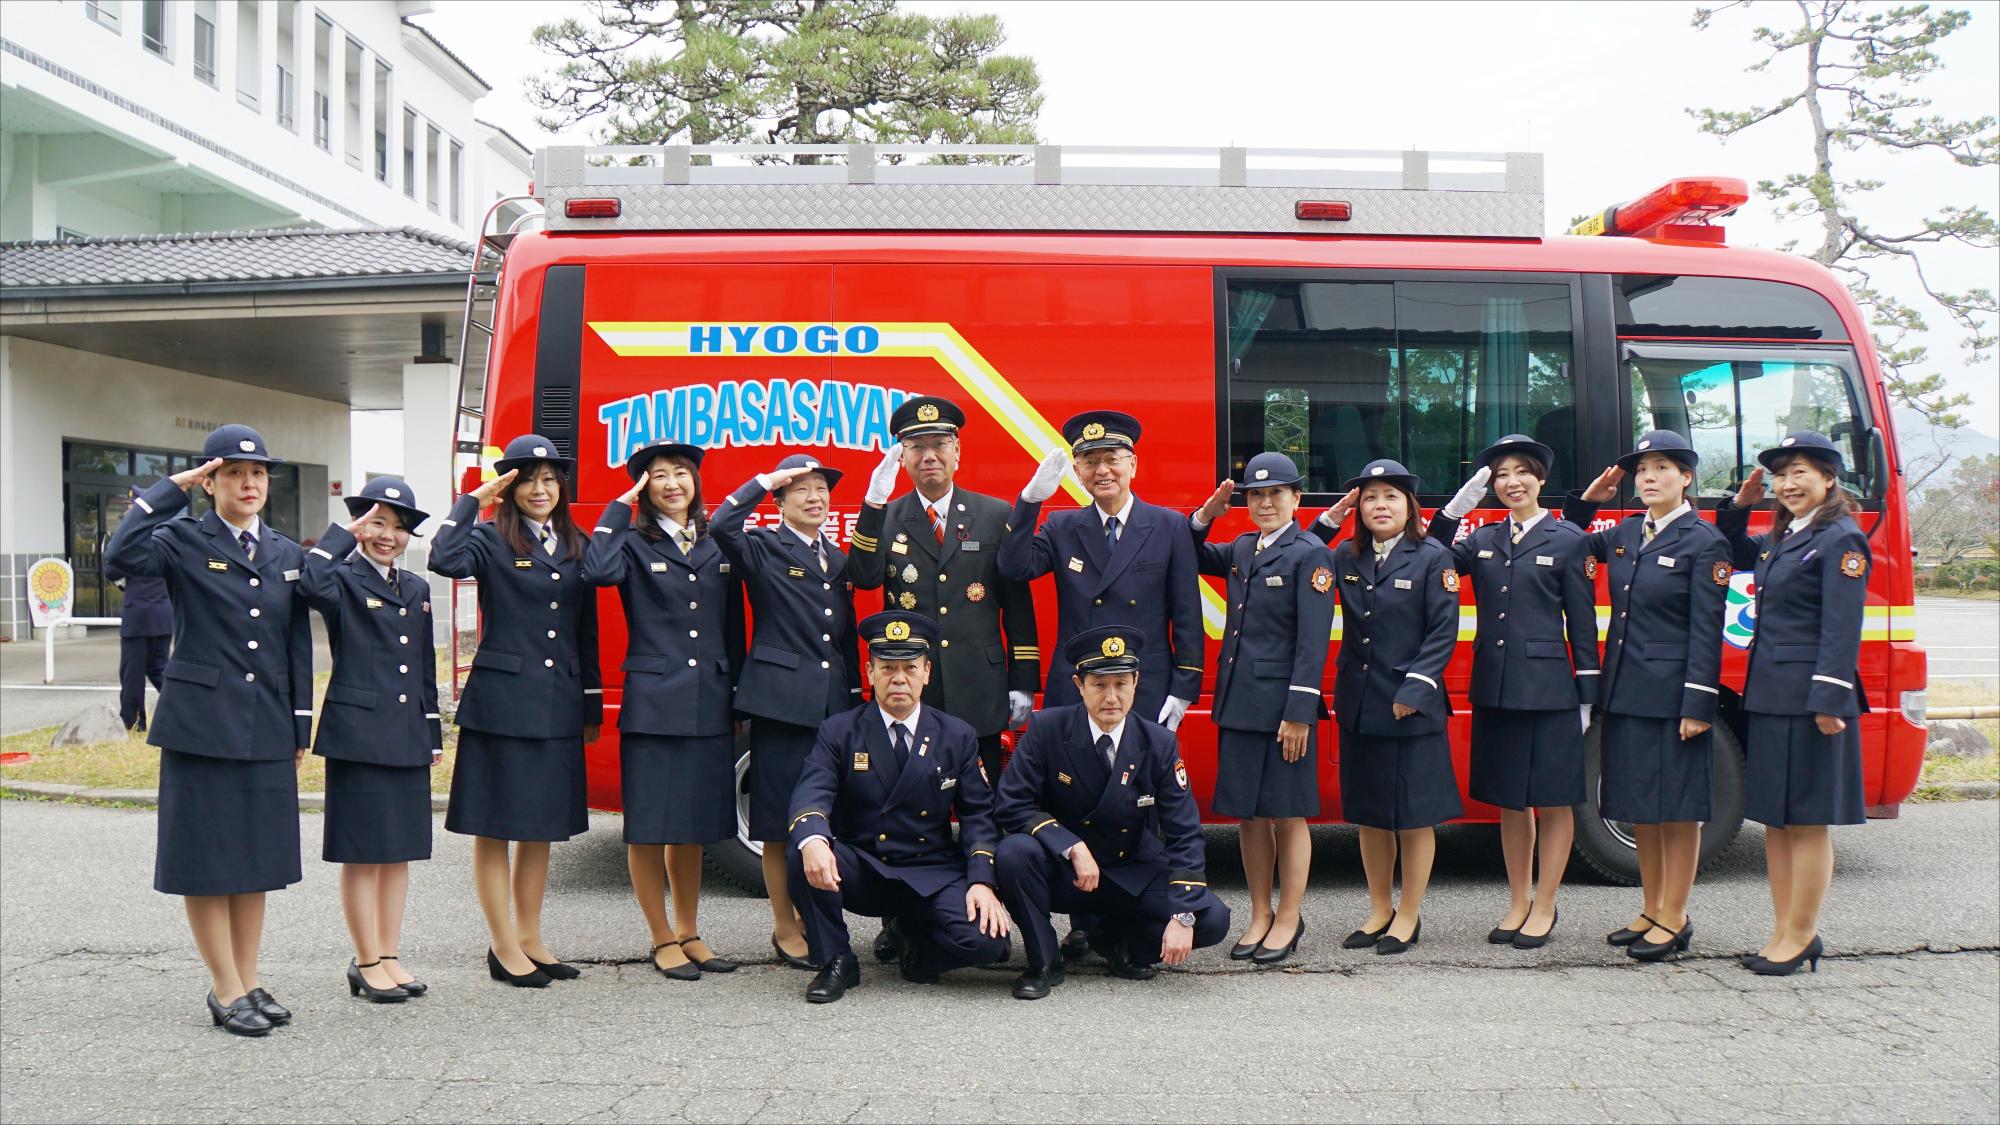 消防車の前で女性消防団員の方たちと市長などが敬礼している写真